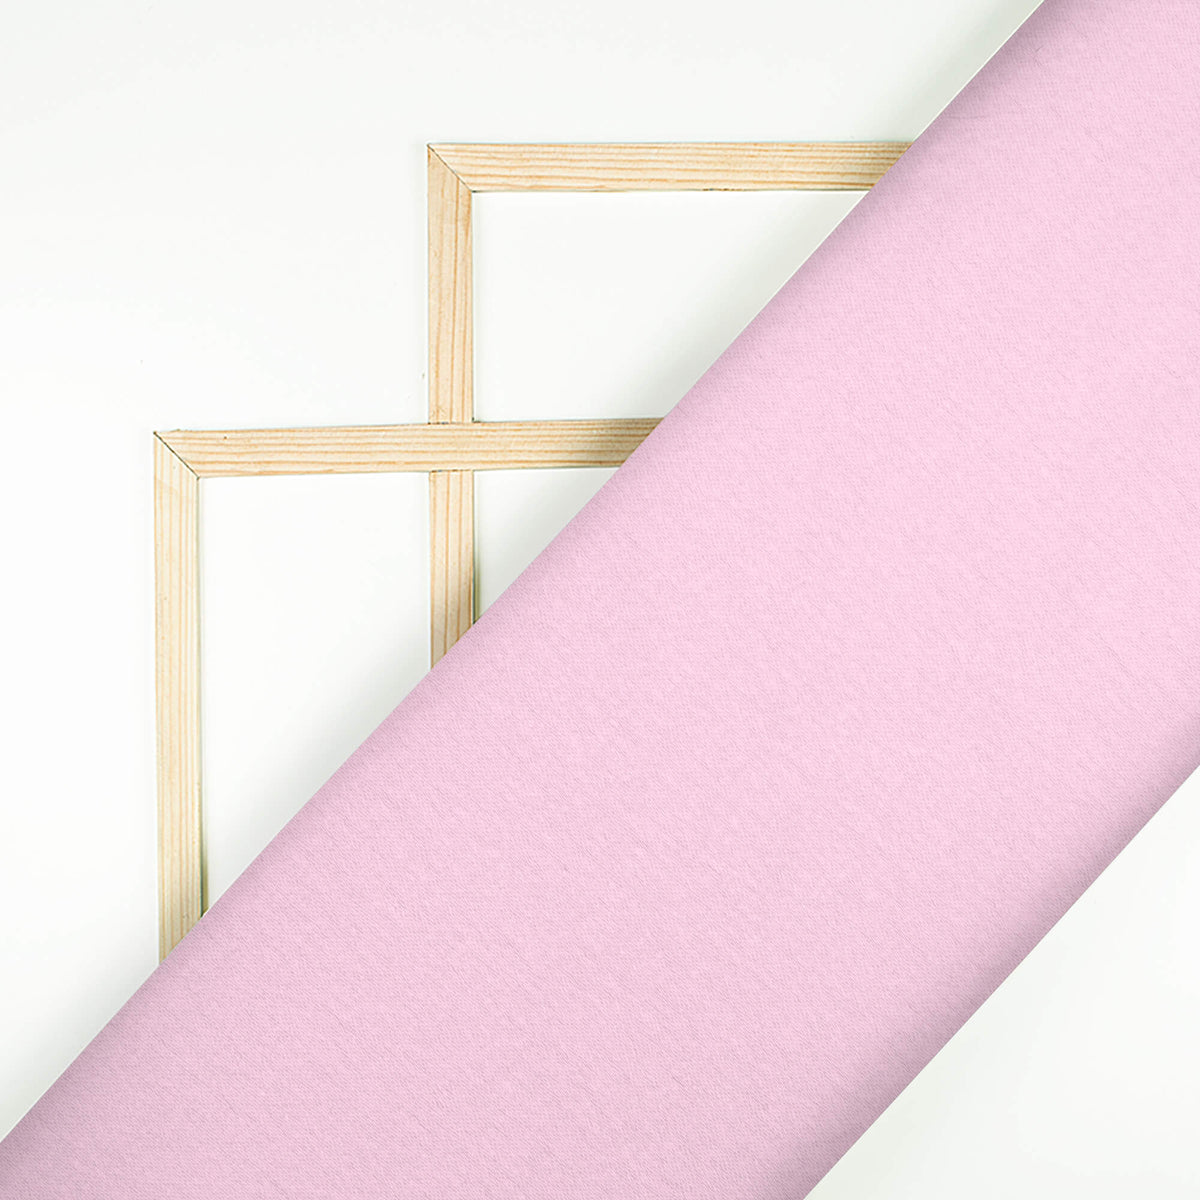 Lace Pink Plain Japan Satin Fabric